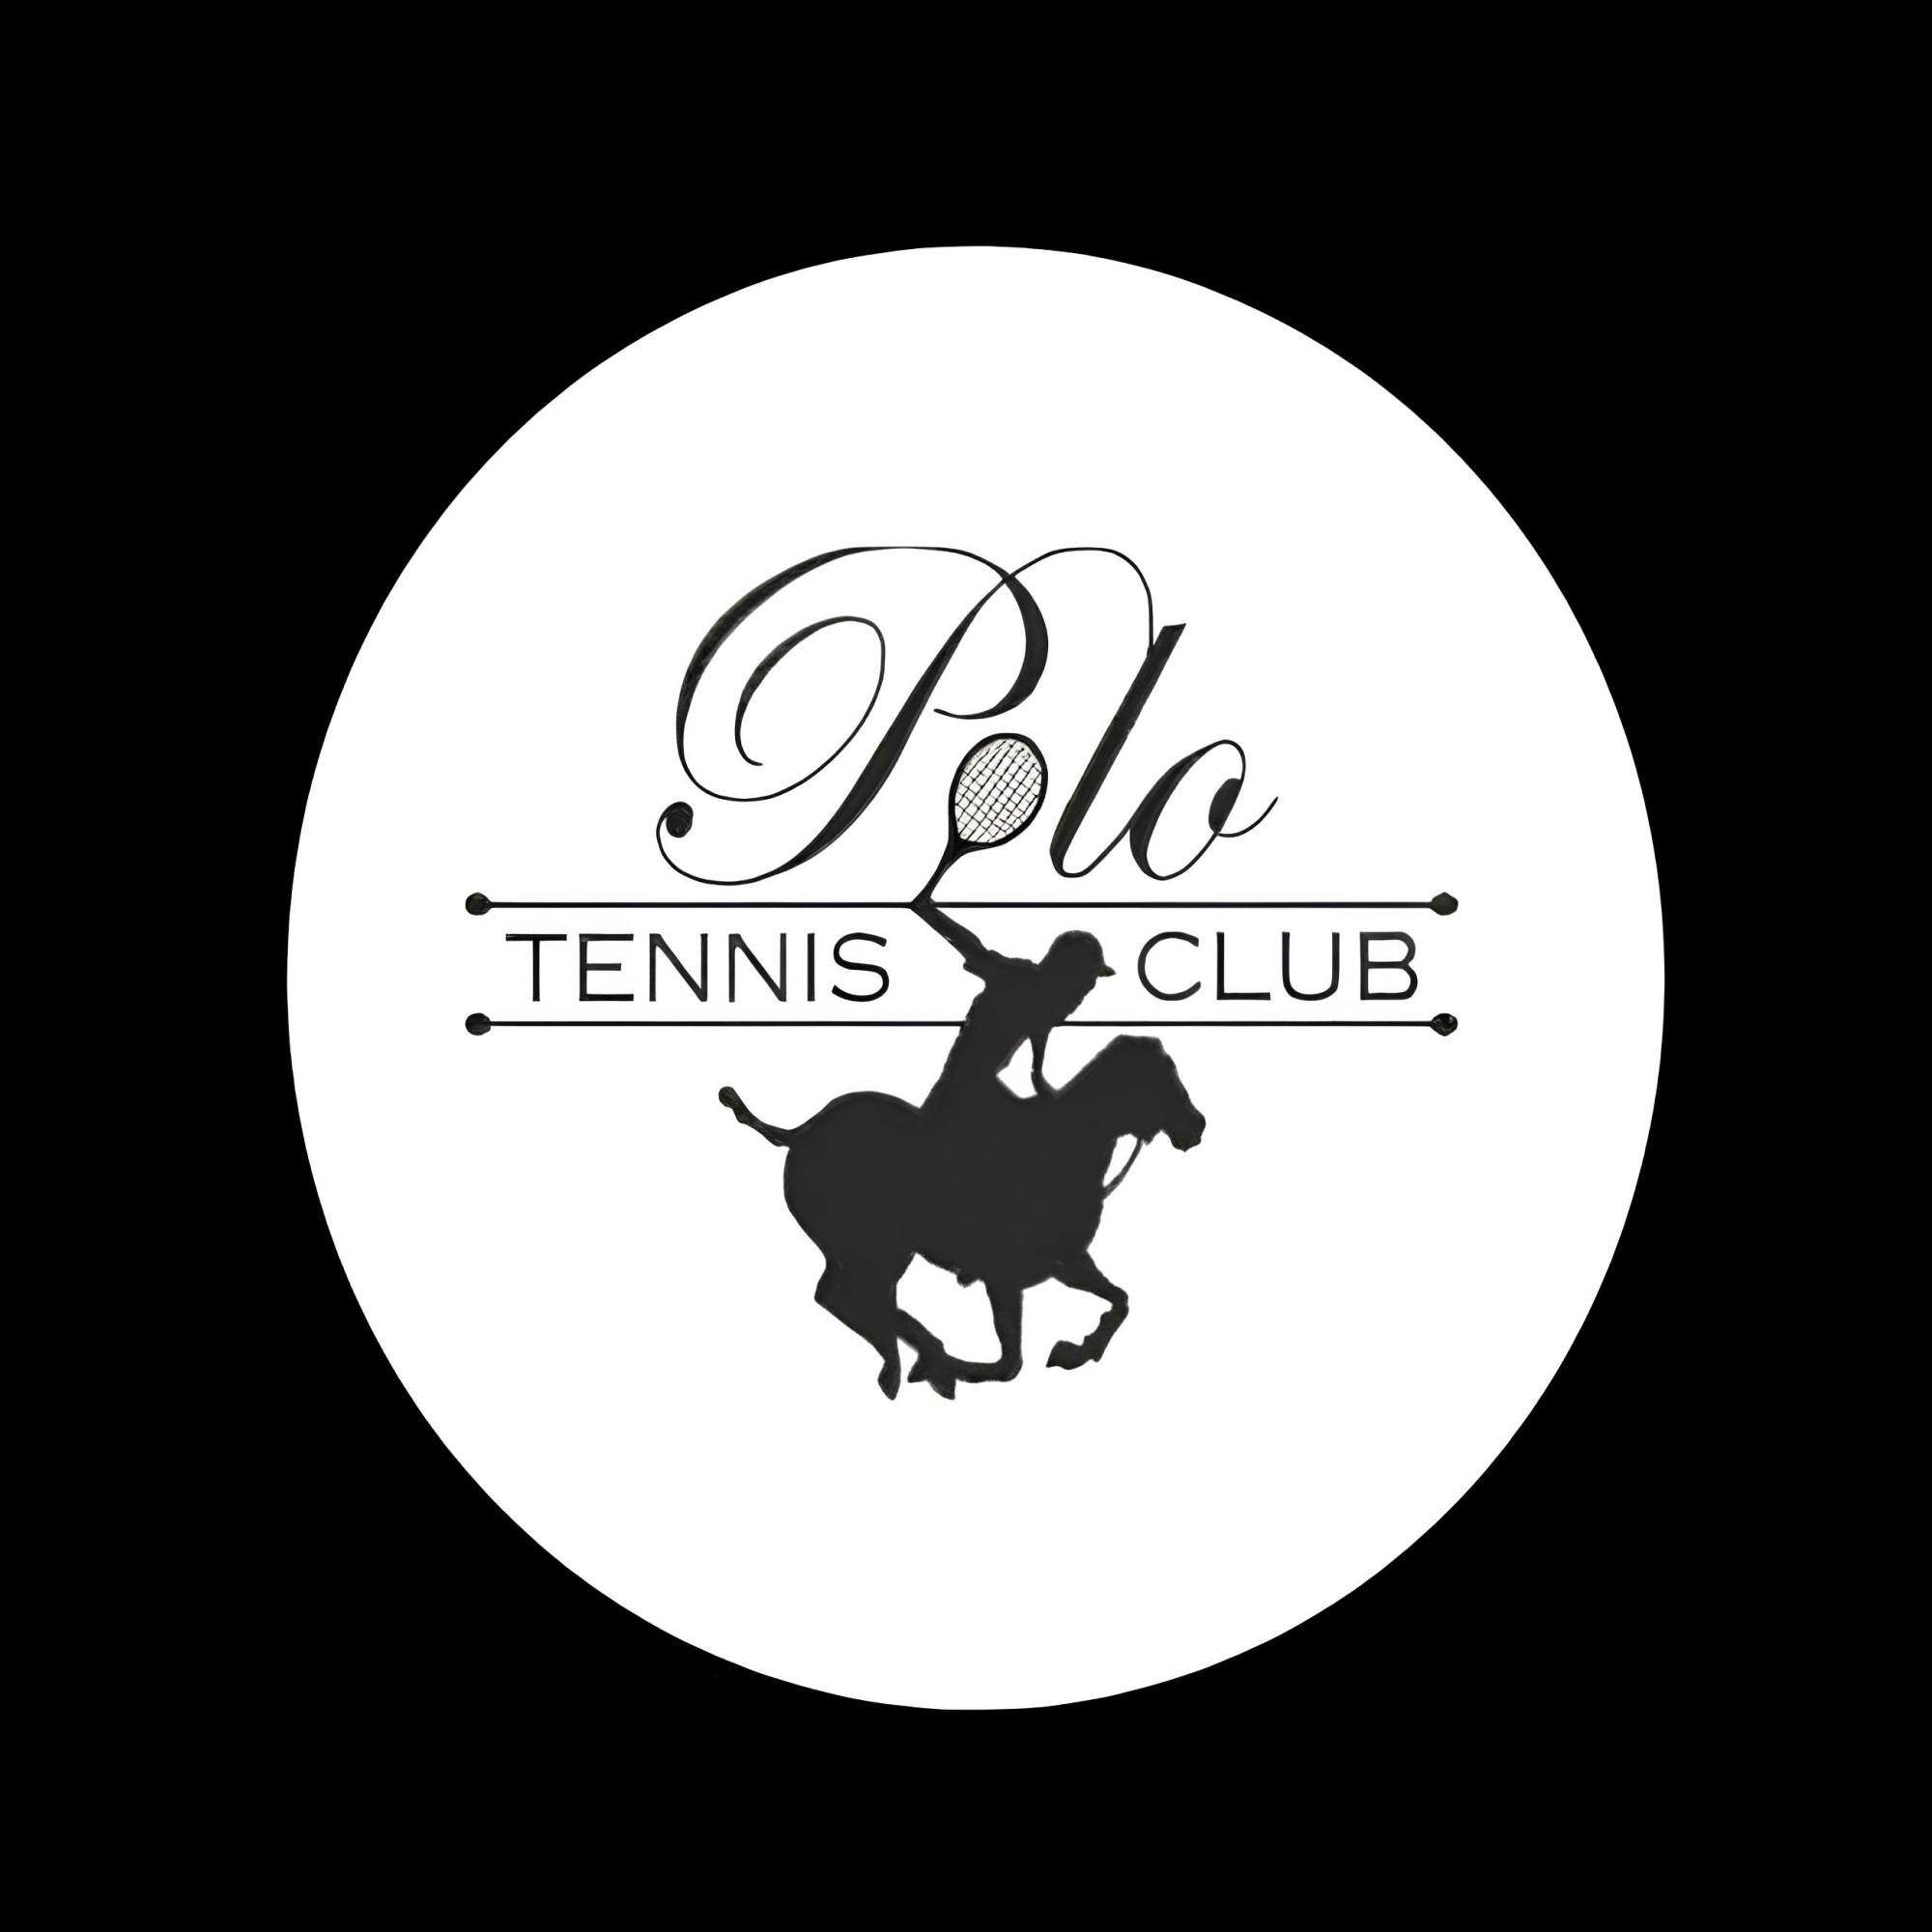 Polo Tennis & Fitness Club